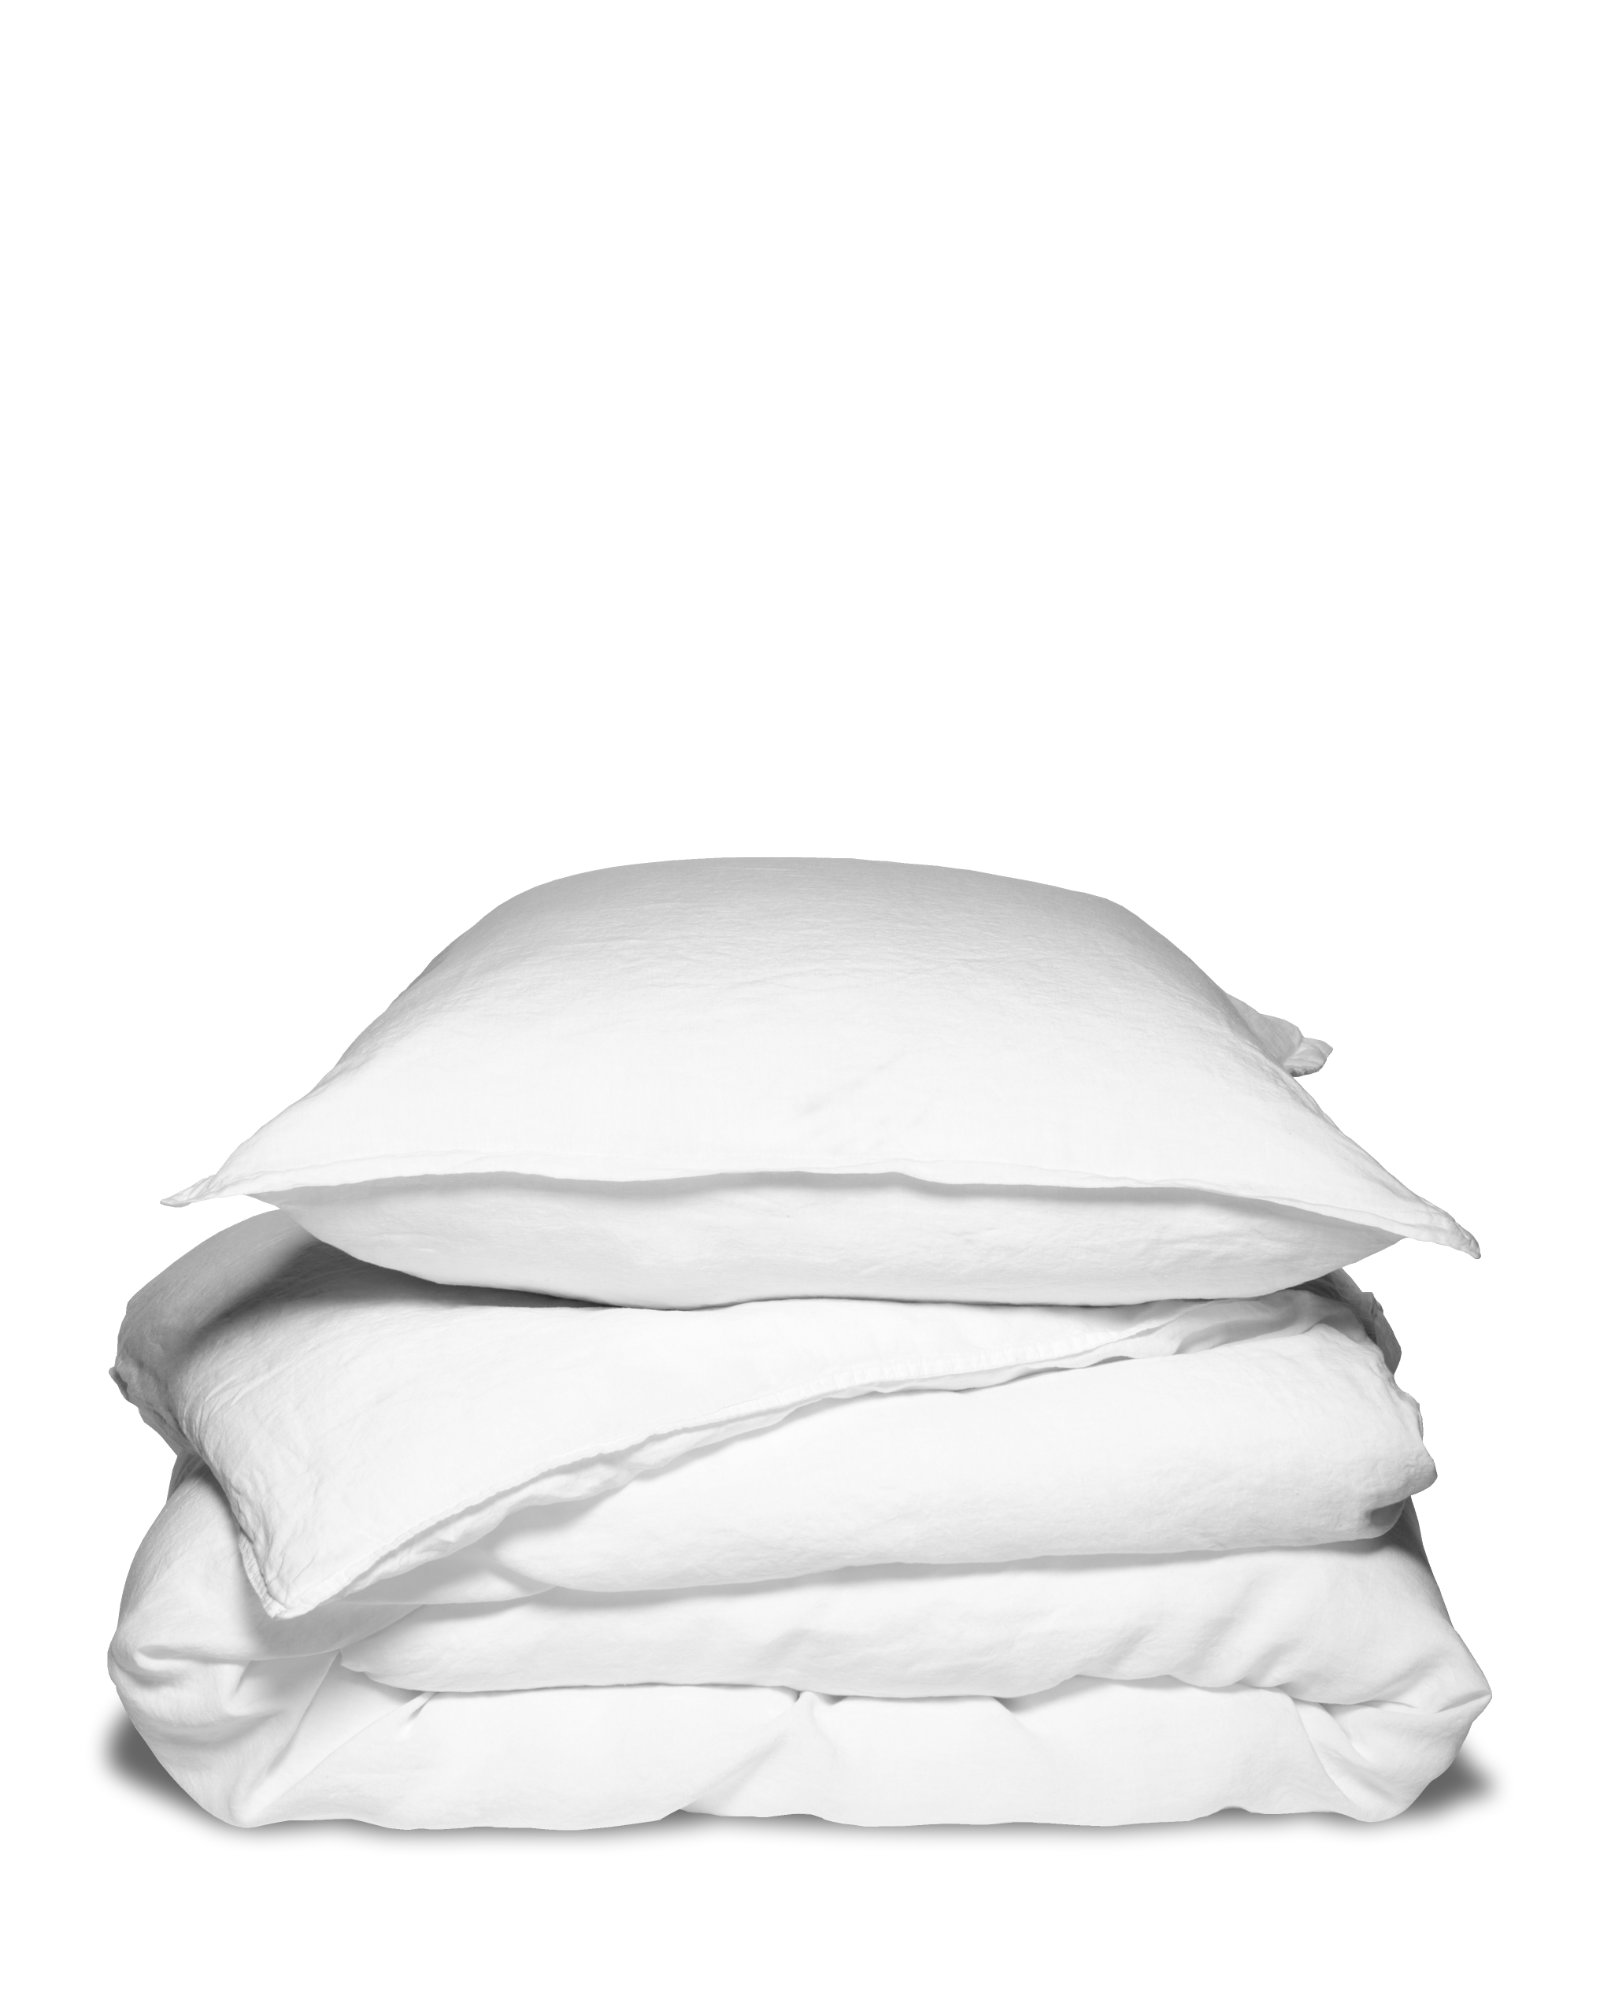 MARIE-MARIE - Bed linen set LINEN STORIES White - 140x220 cm + 1 sloop 65x65 cm - White